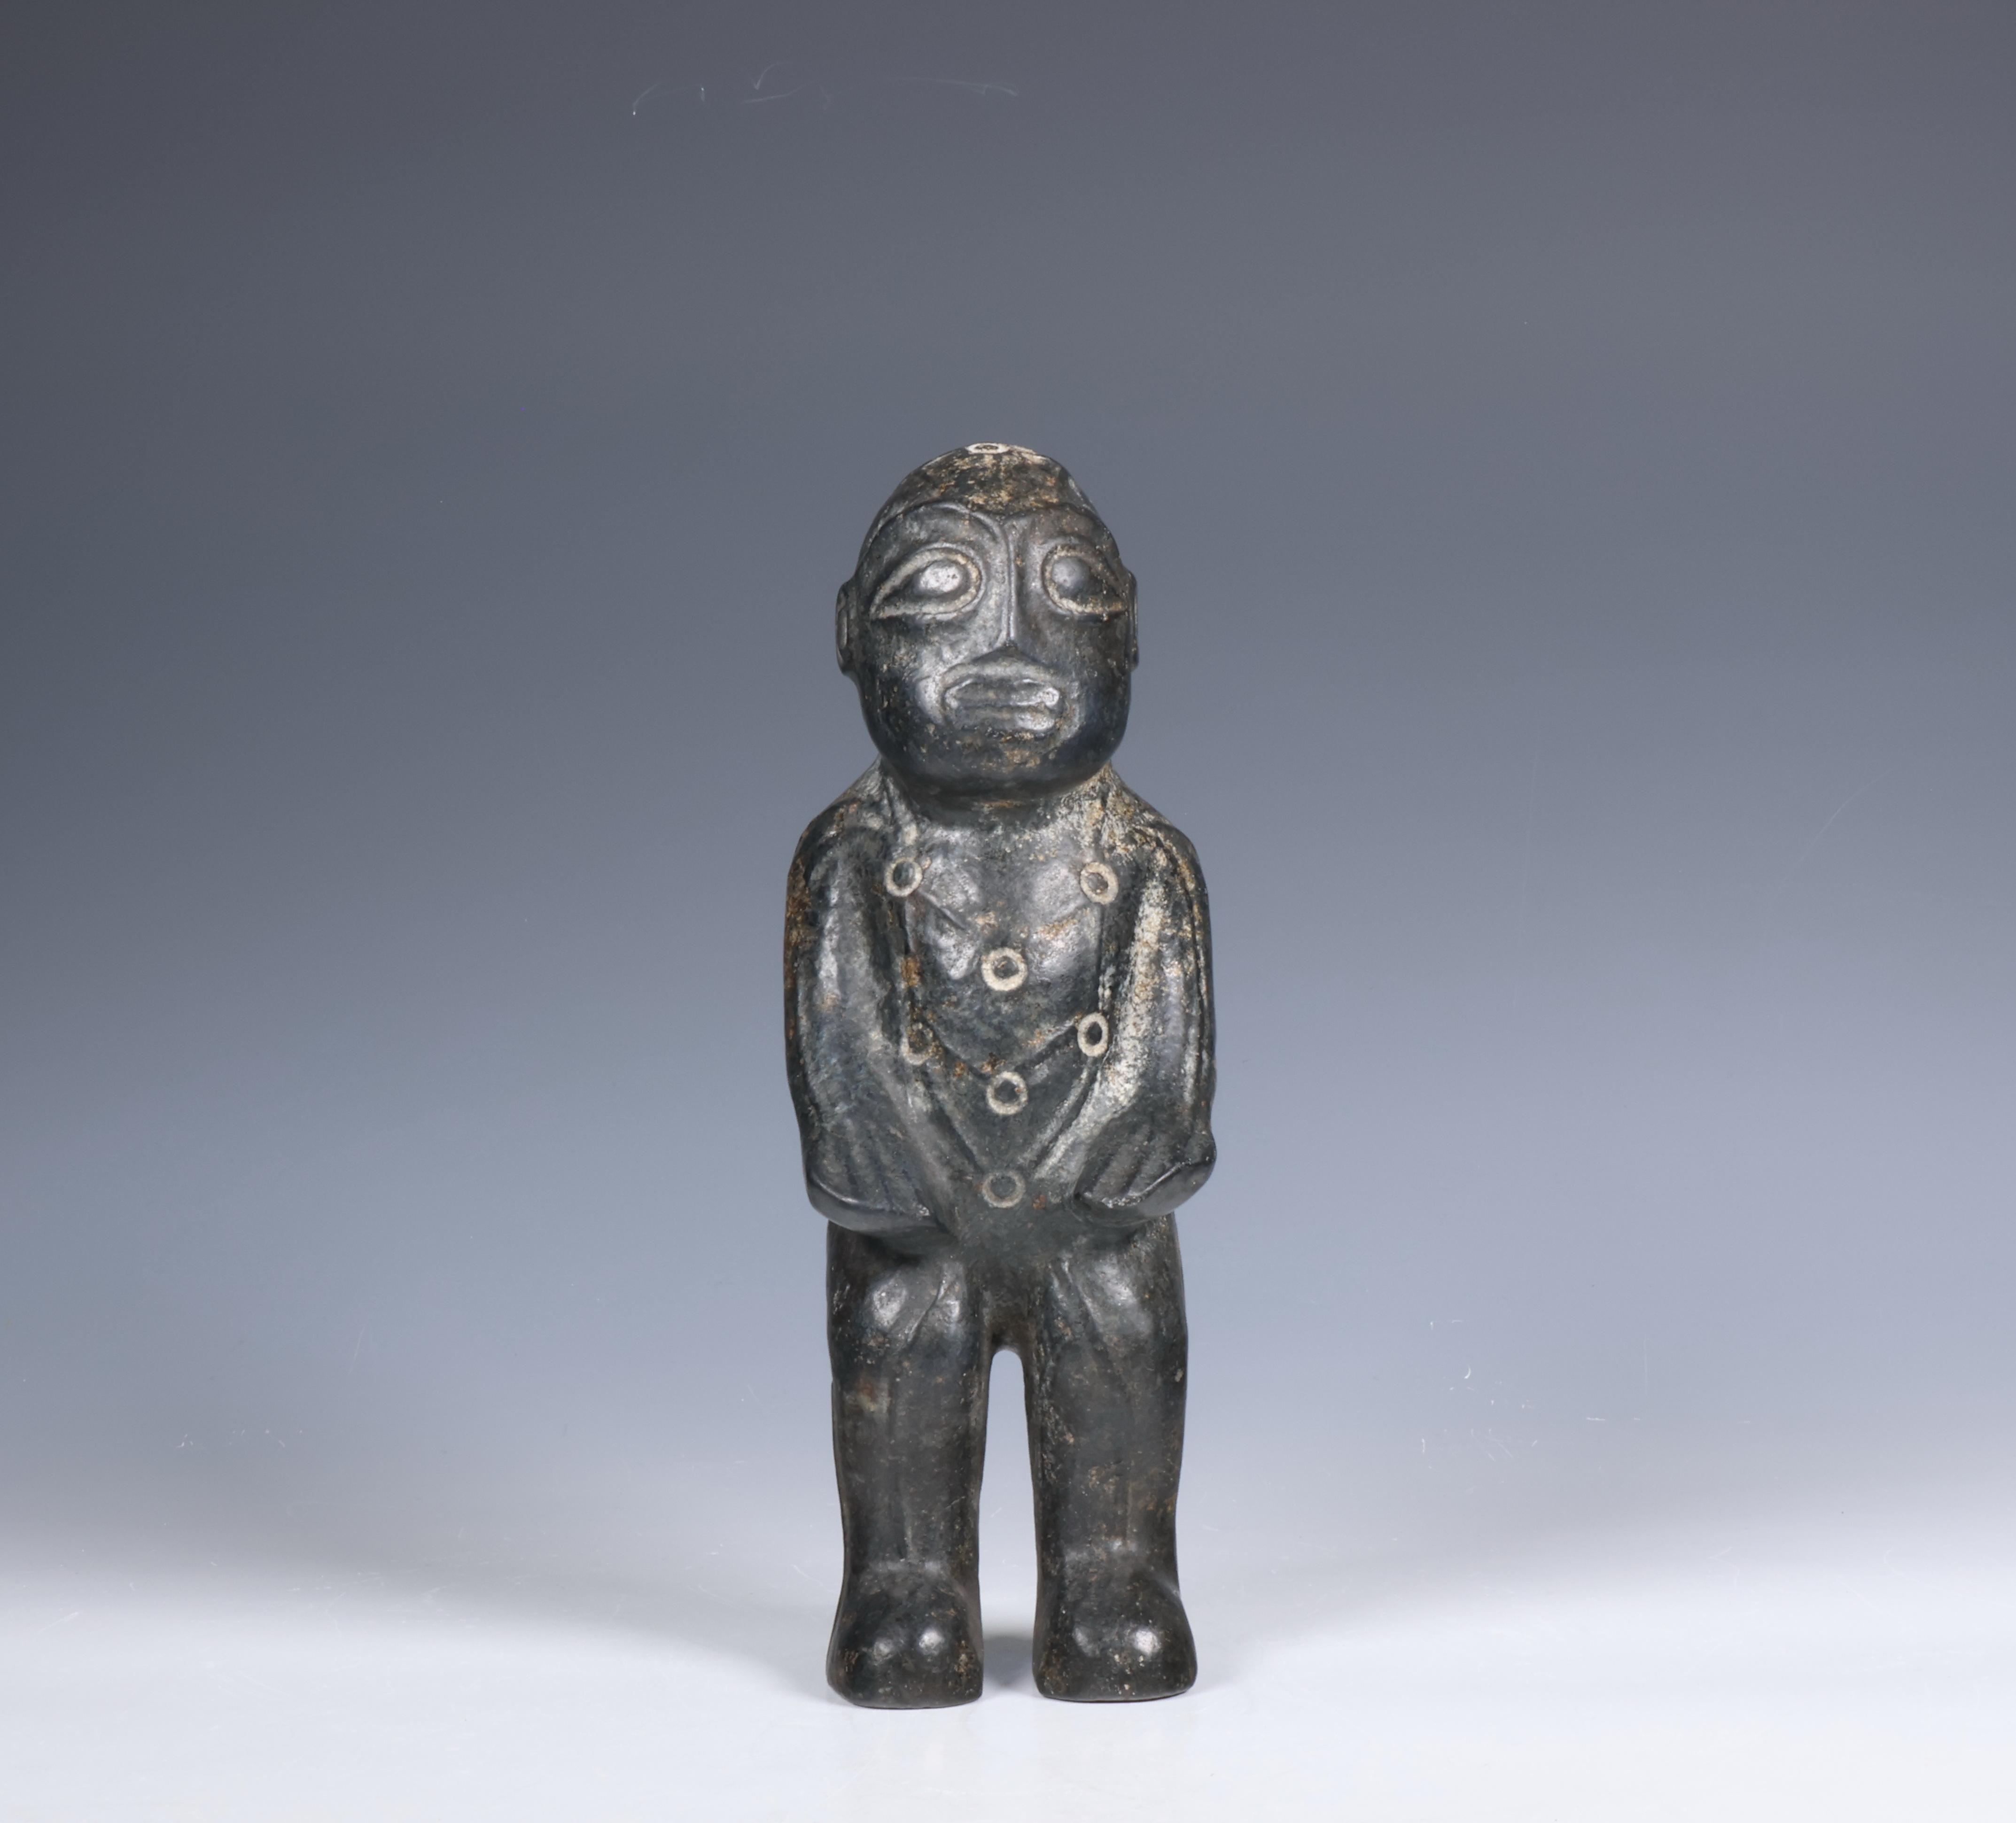 China, black stone medical figure,